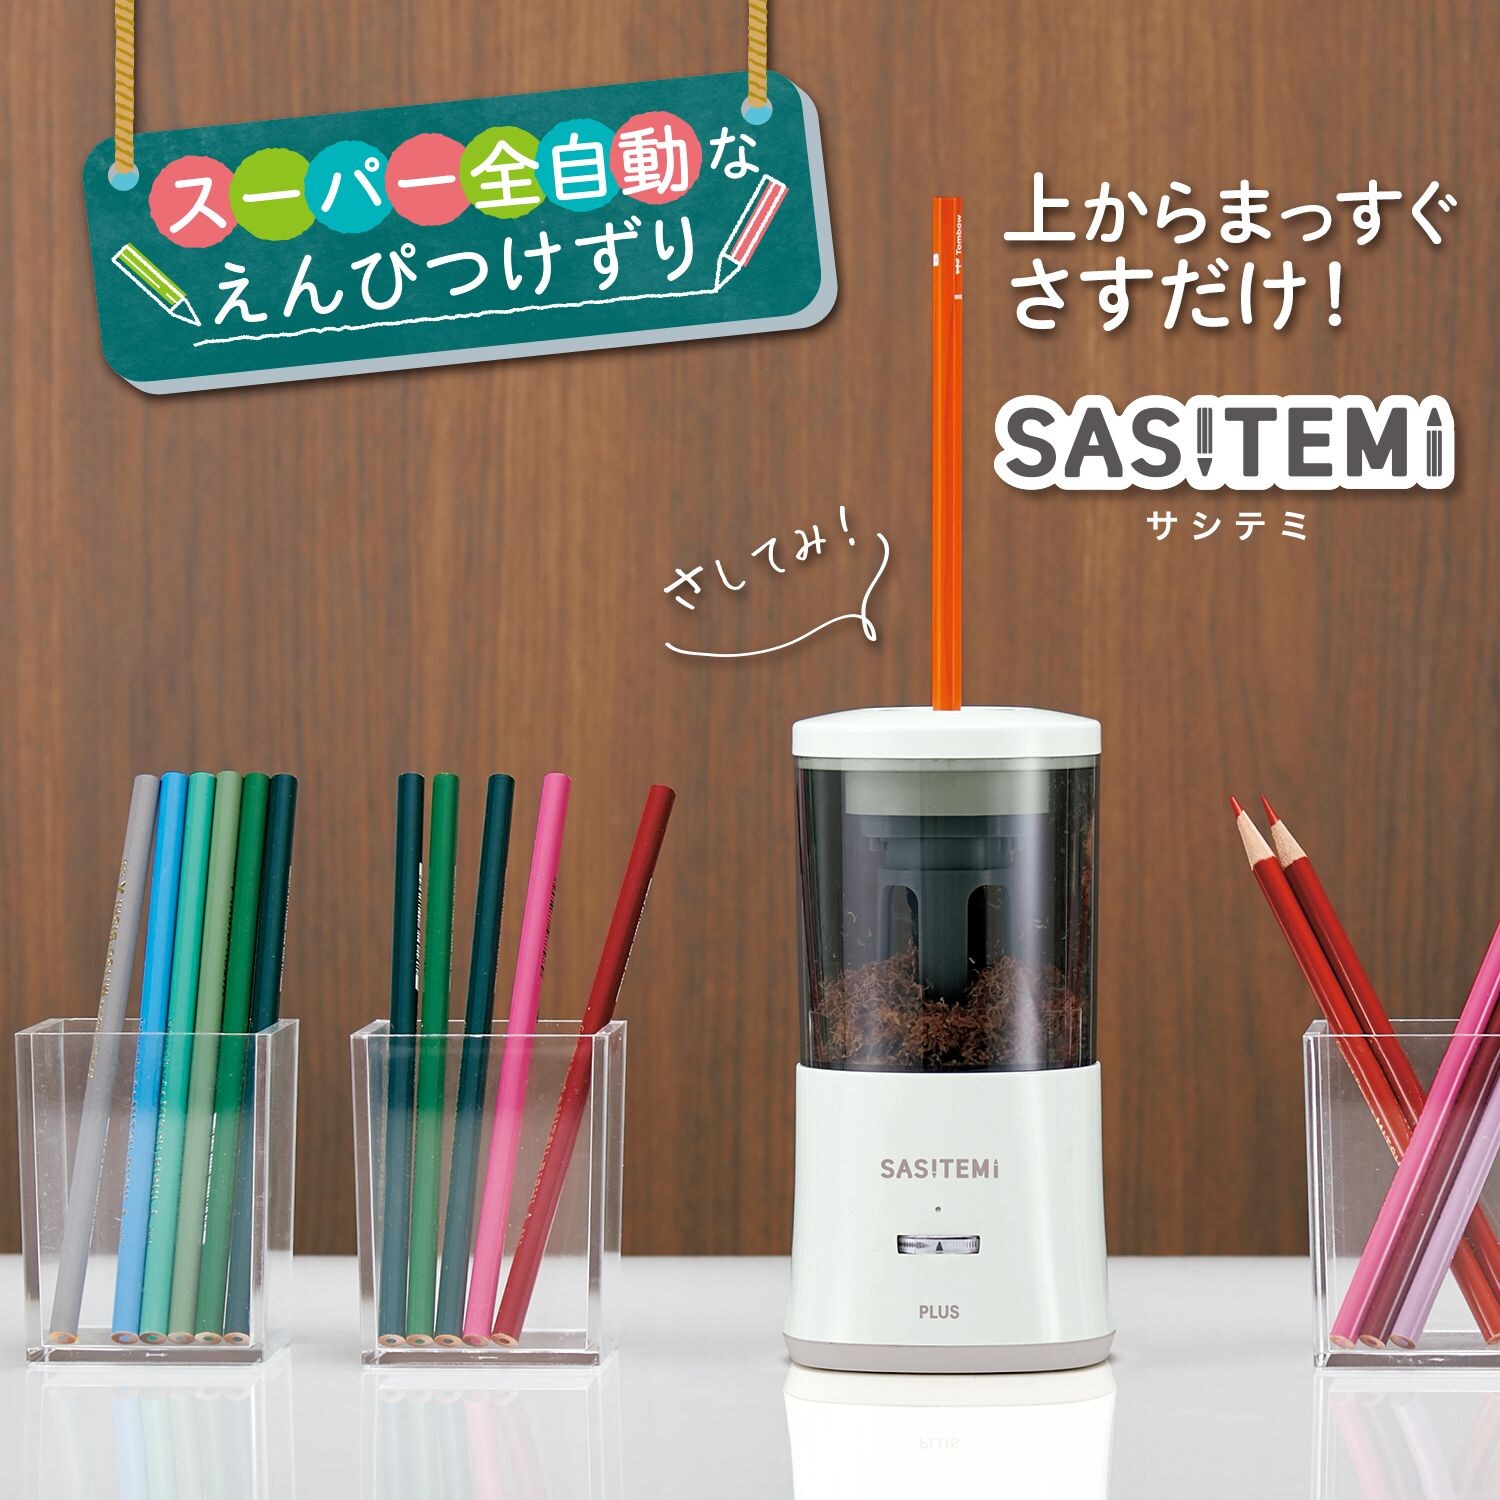 【ベルメゾン】SASITEMI 全自動充電式鉛筆削り